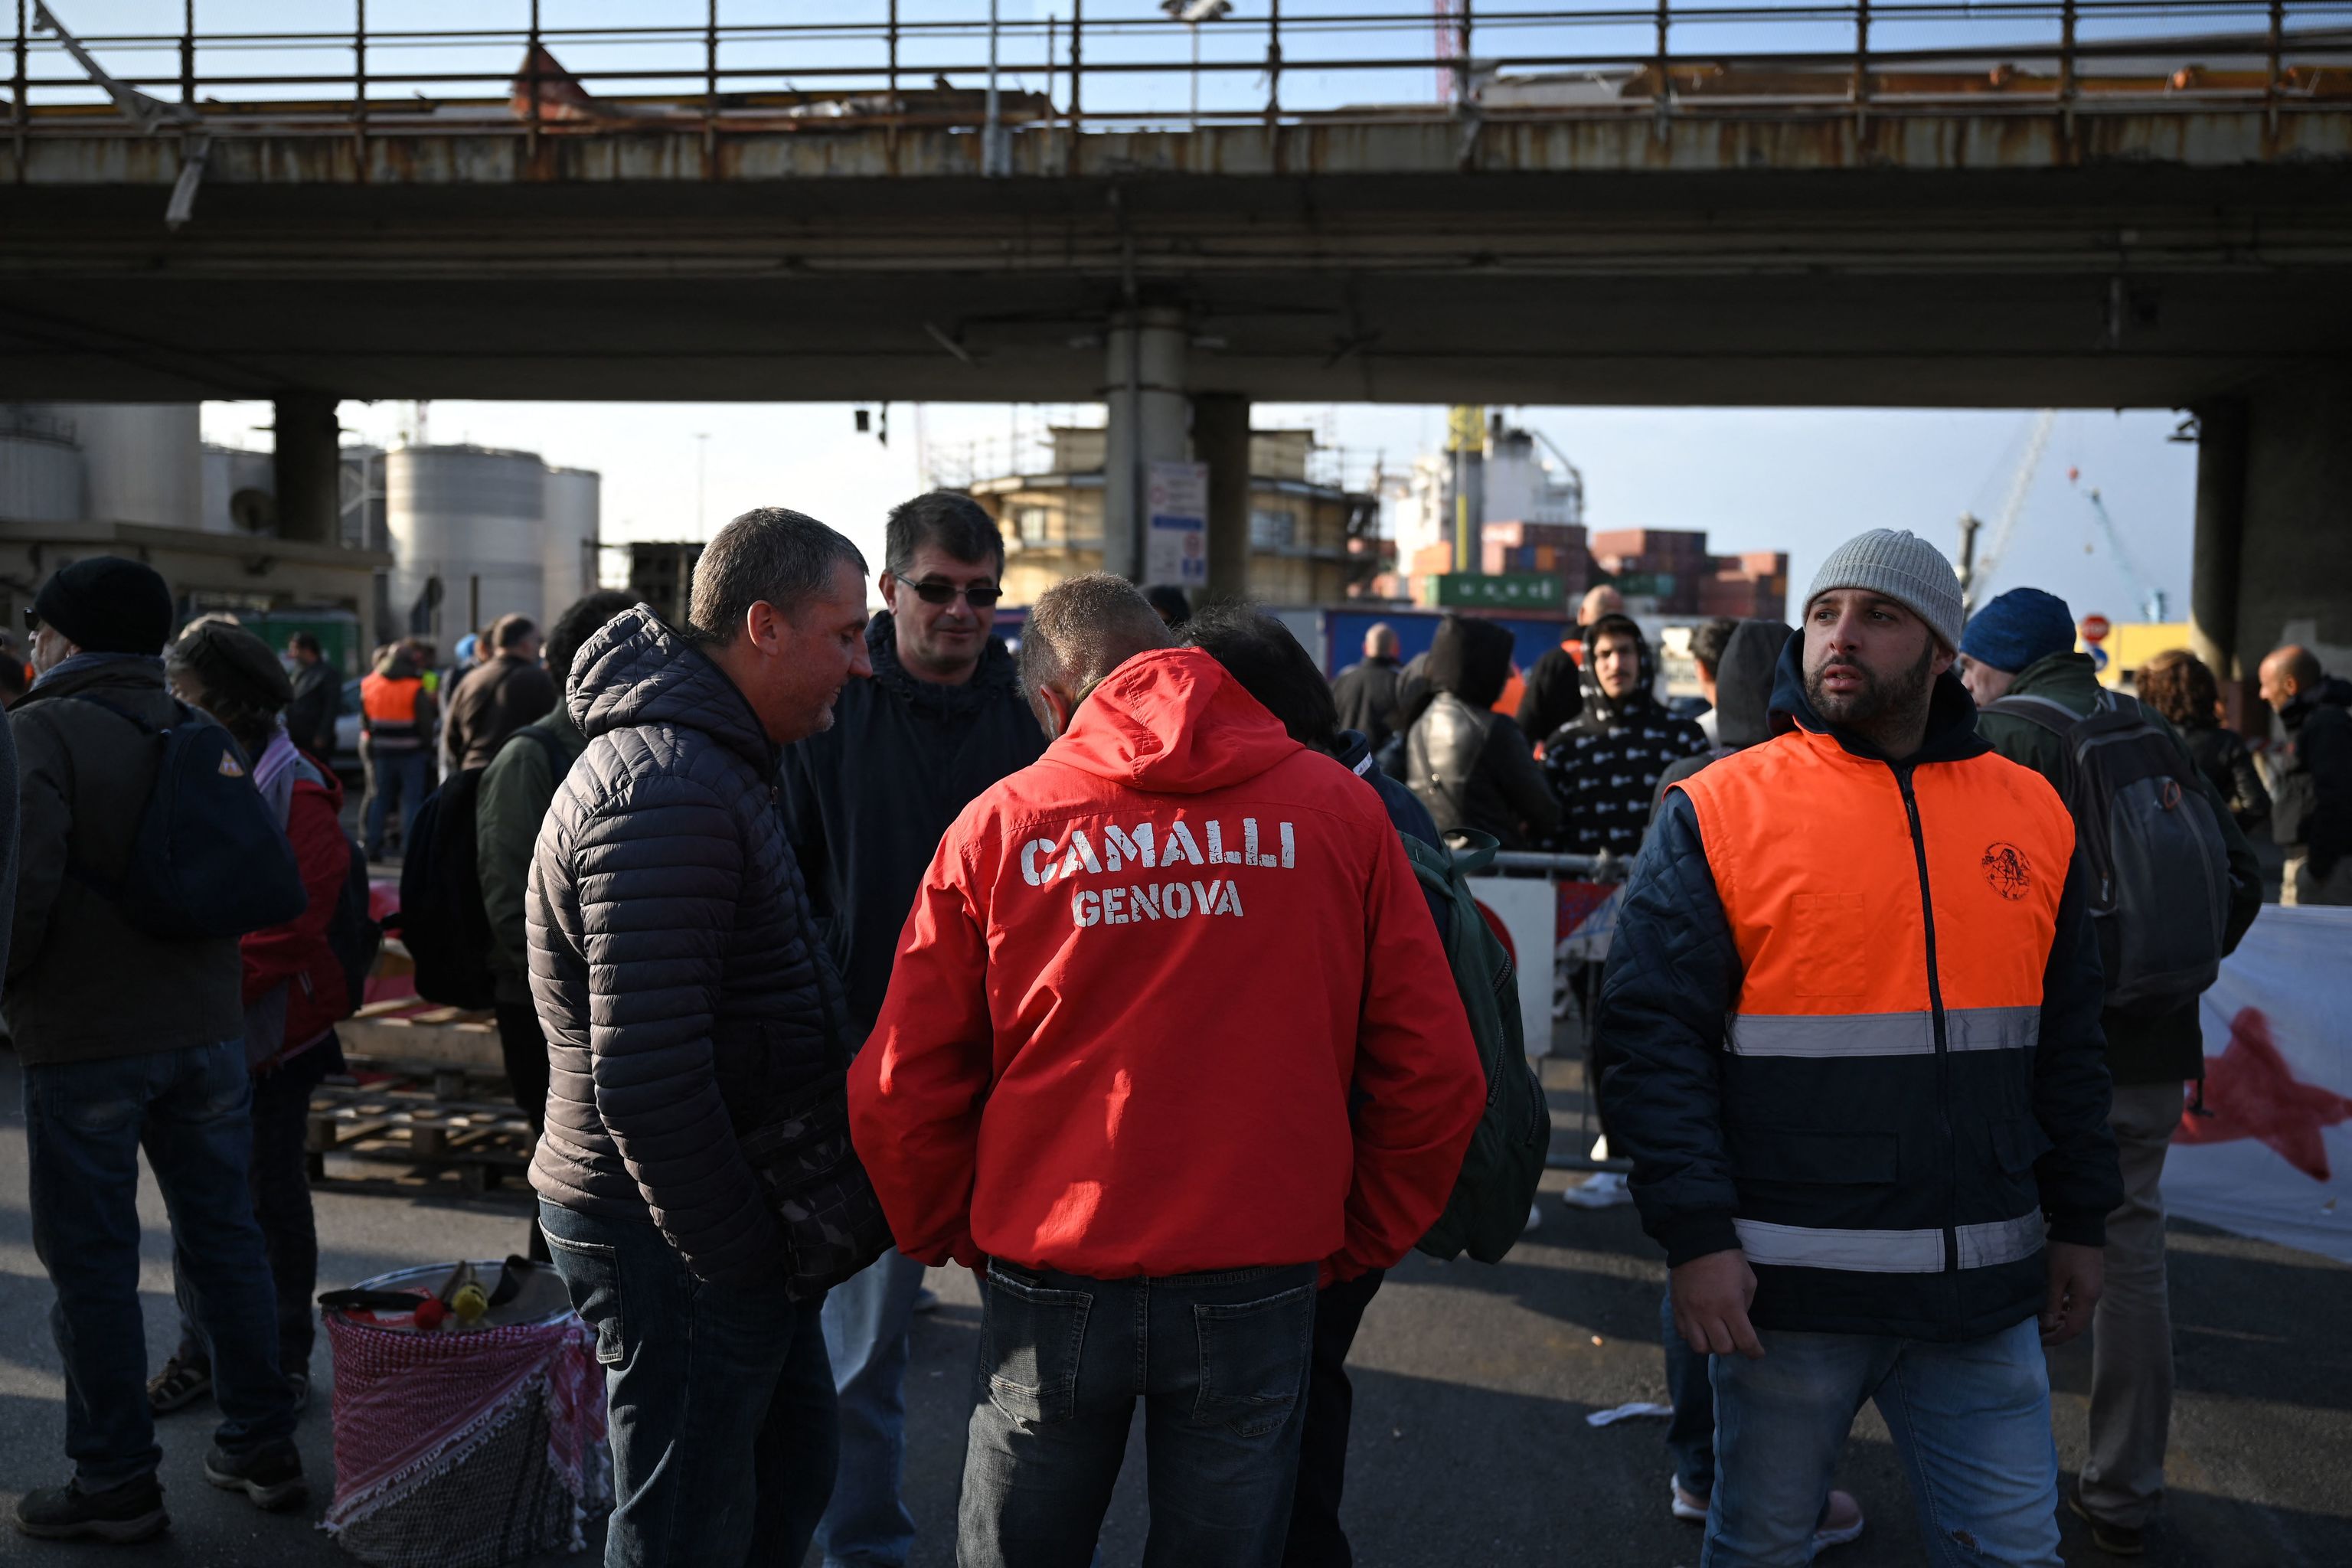 Los trabajadores bloquean las operaciones portuarias en la puerta de Etiopa (Varco Etiopia) en el puerto de Gnova, Liguria, el 15 de octubre de 2021 al entrar en vigor las nuevas restricciones del coronavirus para los trabajadores.